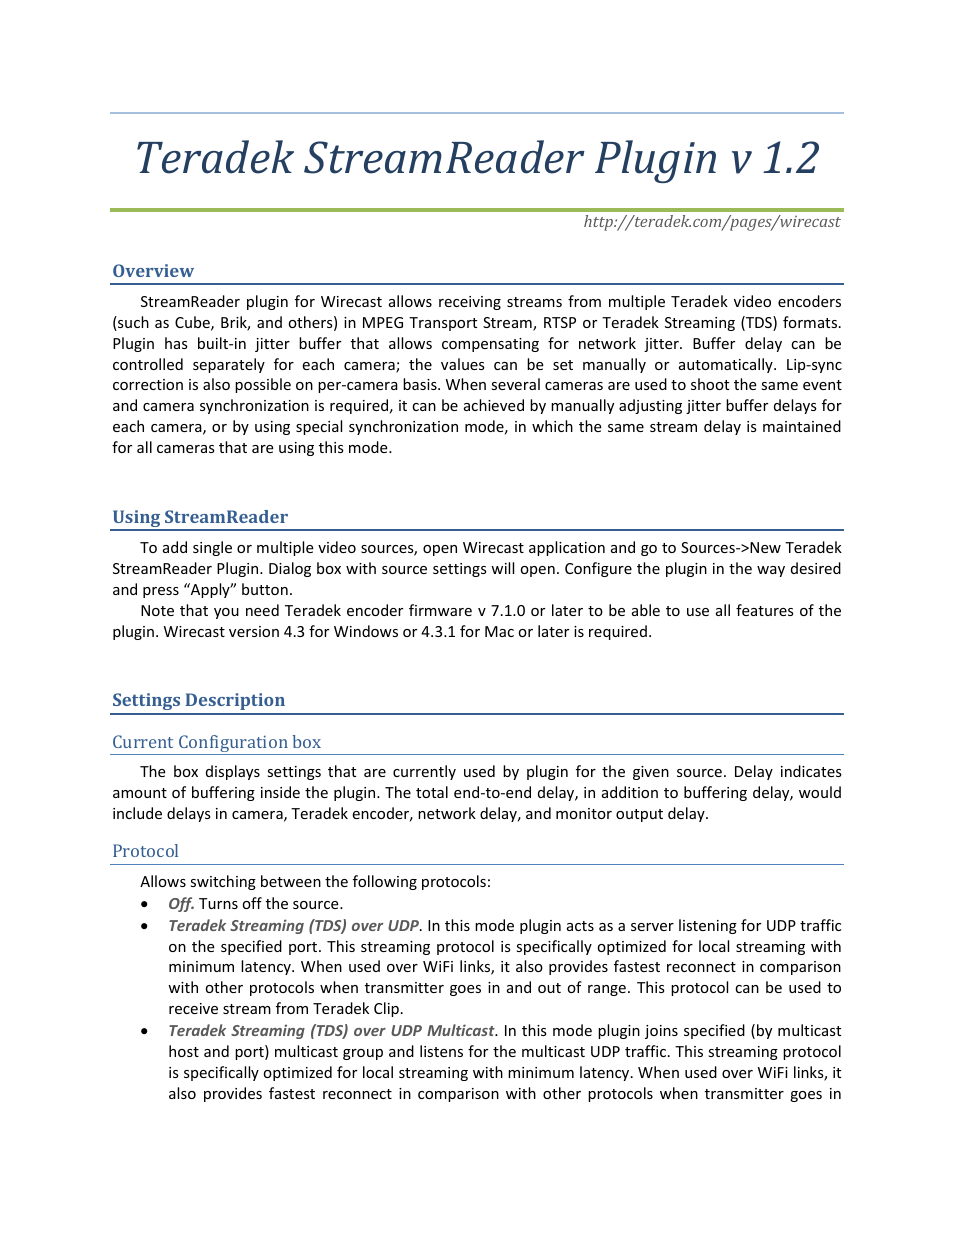 StreamReader Plugin v 1.2